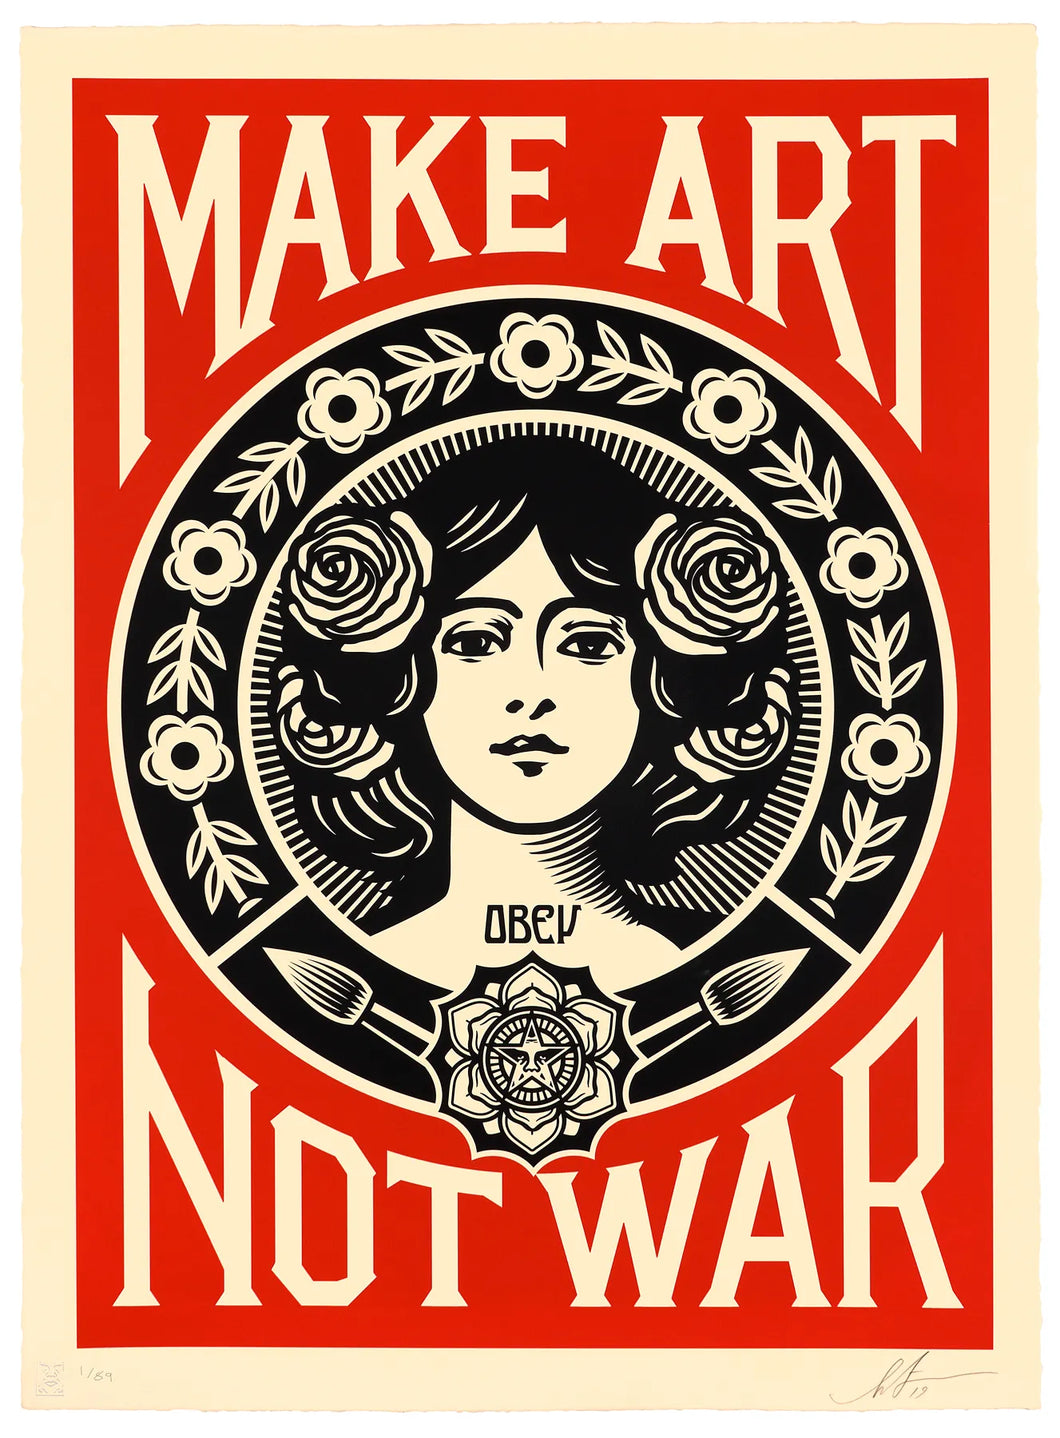 OBEY - MAKE ART NOT WAR